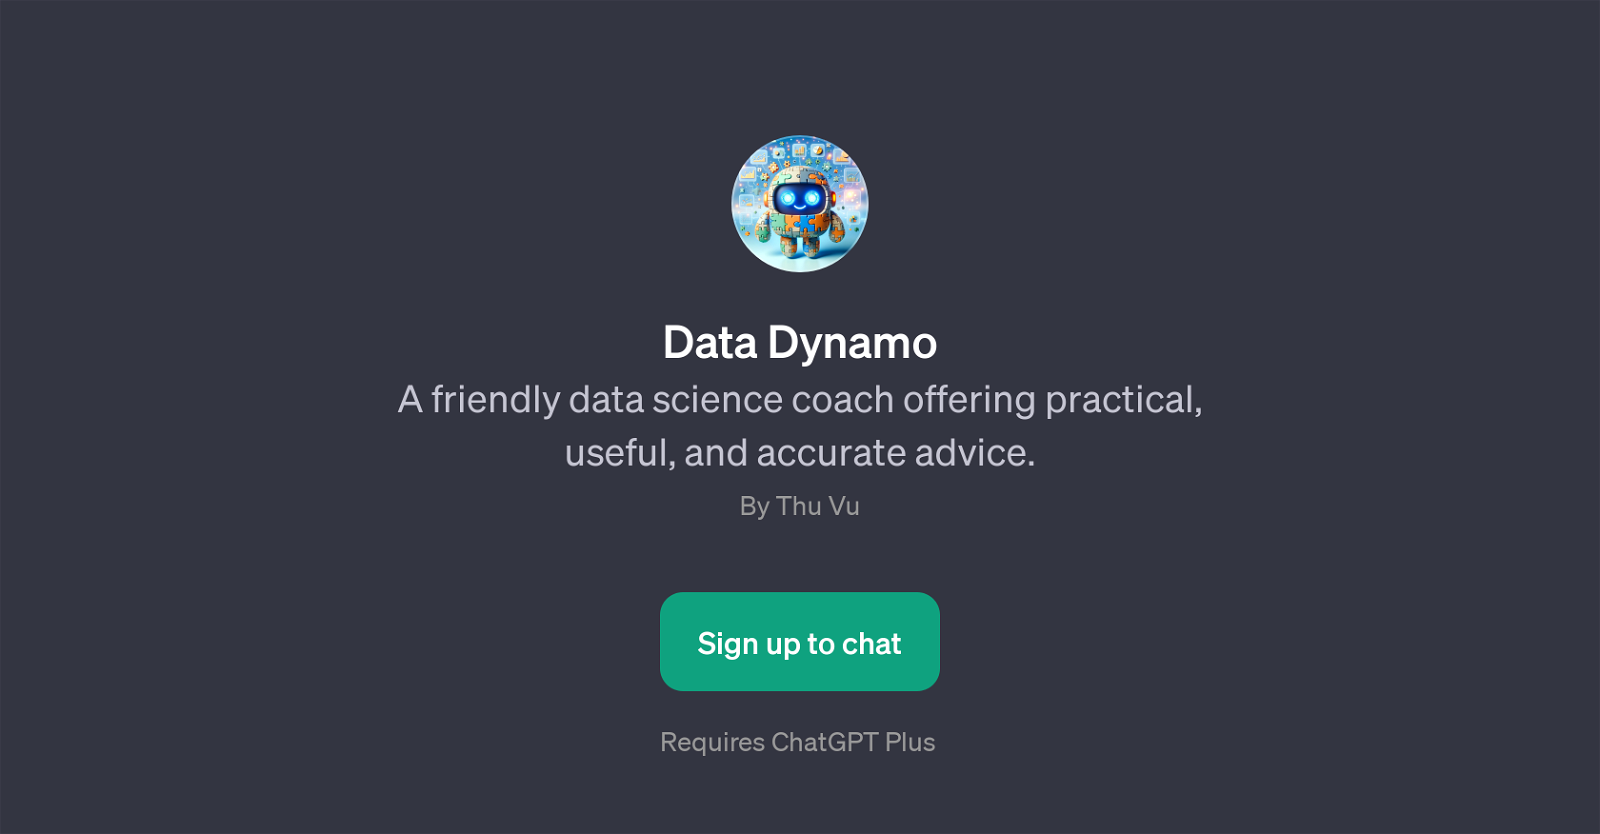 Data Dynamo website